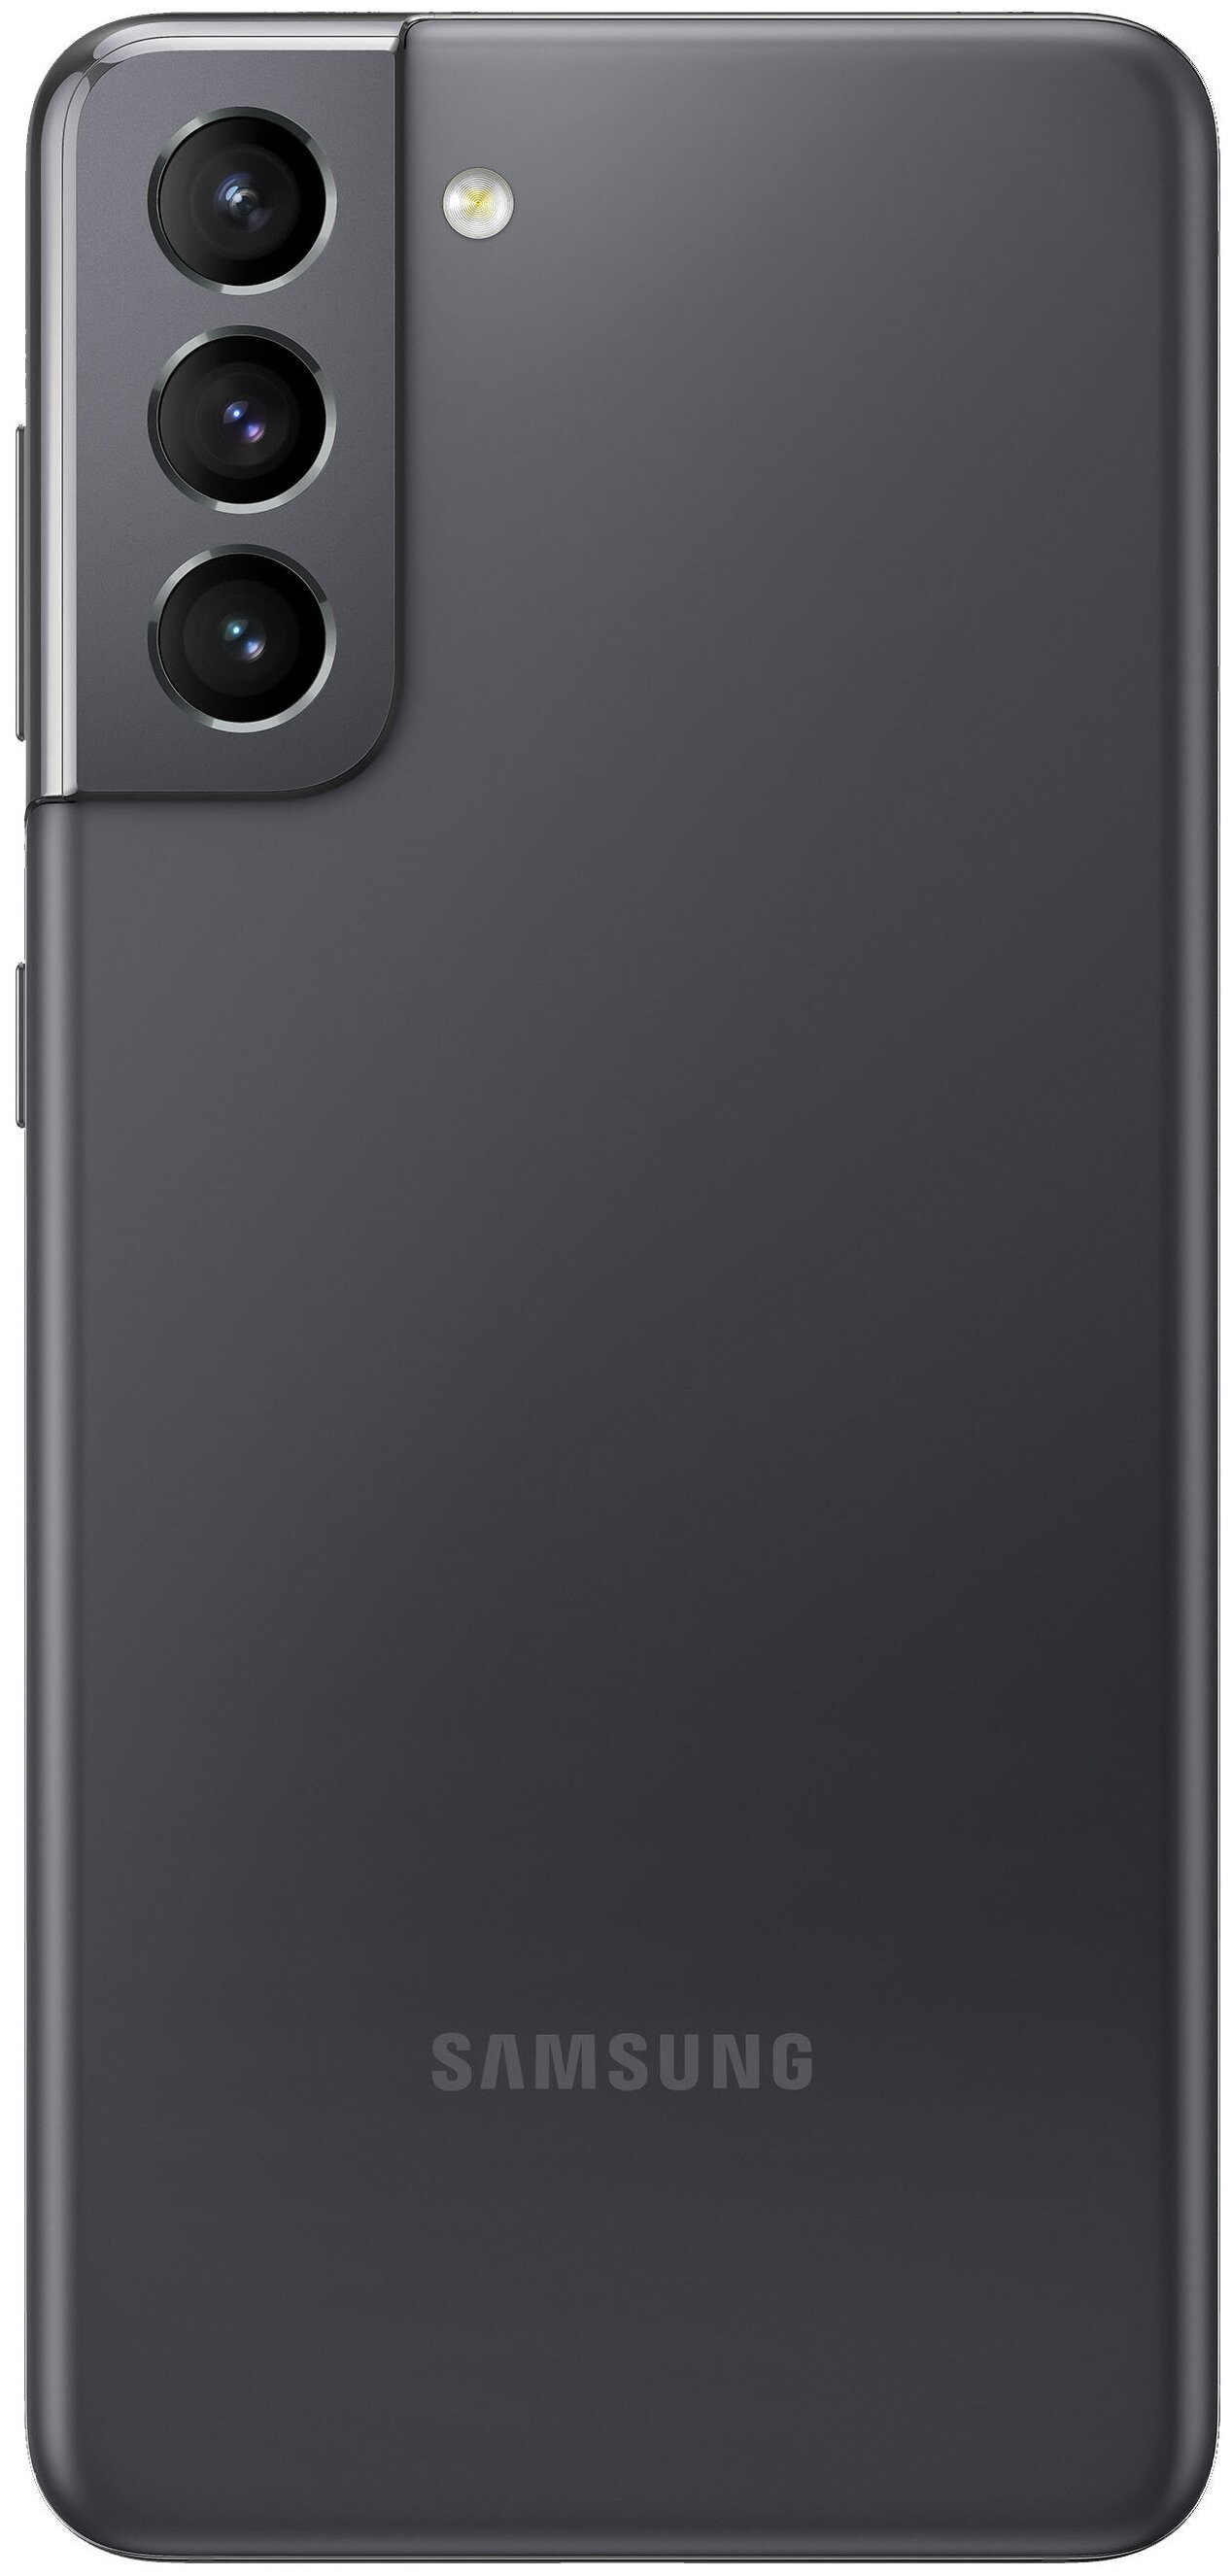 Samsung Galaxy S21 5G (SM-G991B) - оперативная память: 8 ГБ